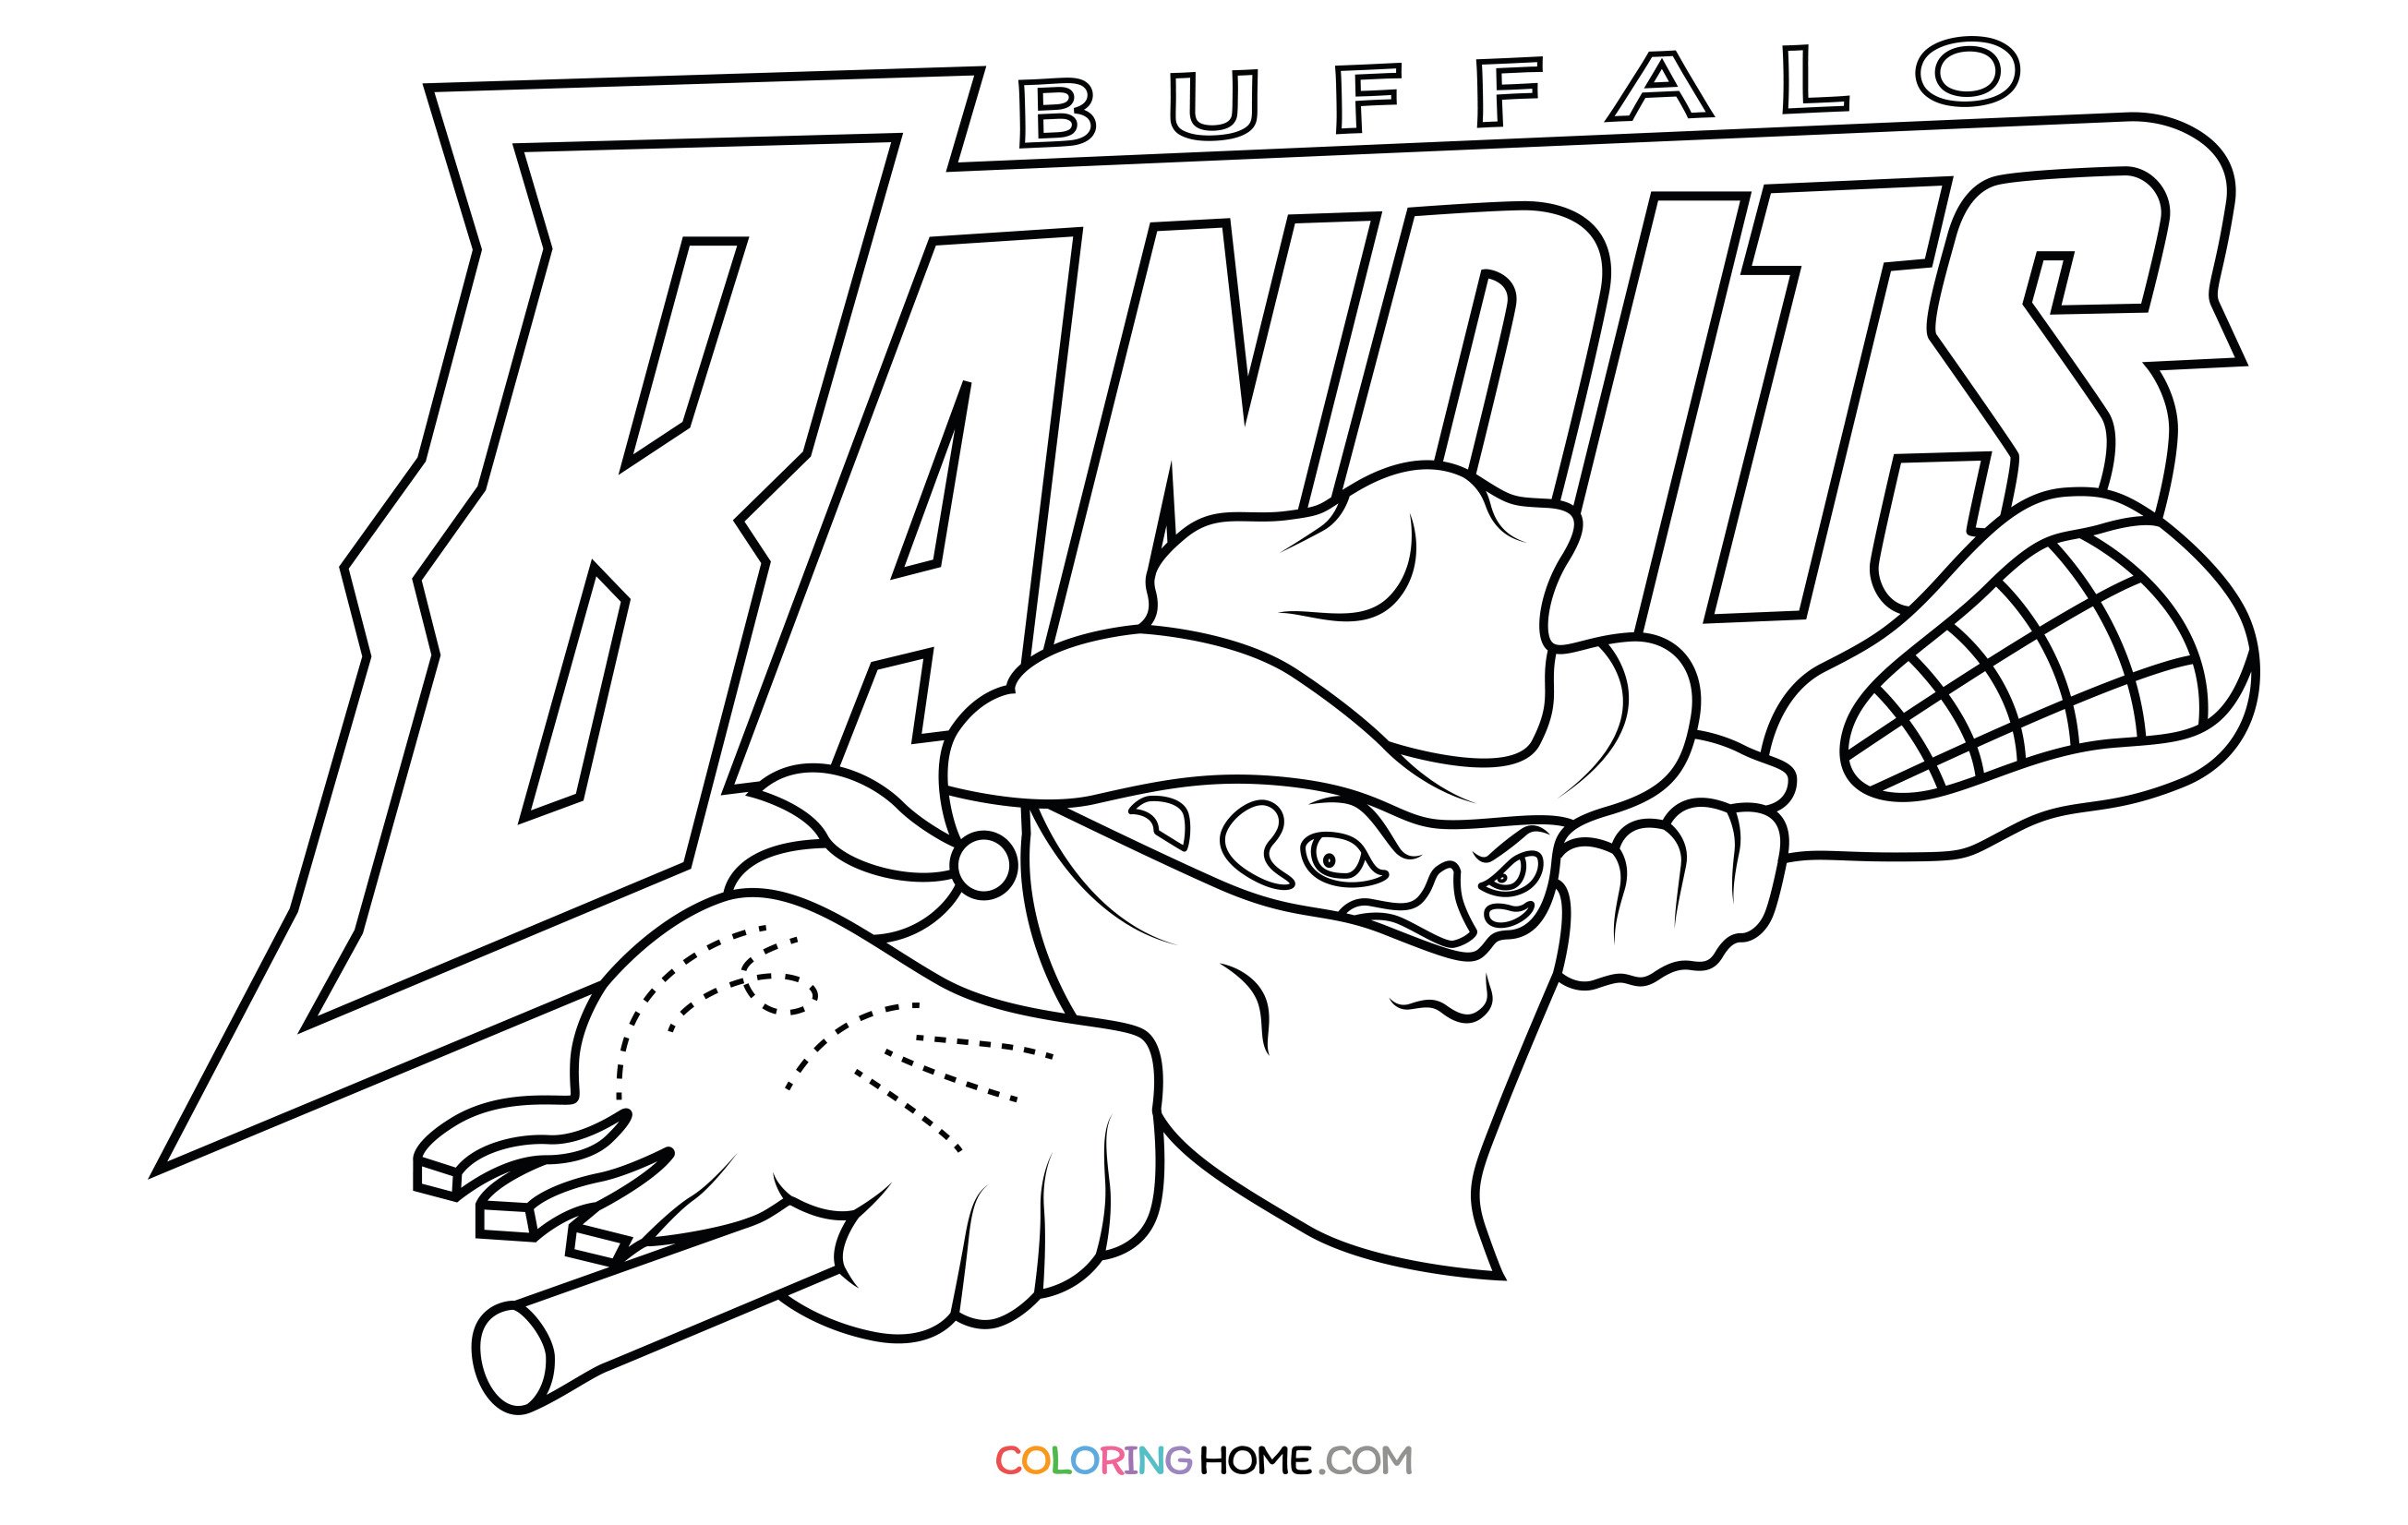 Buffalo Bandits coloring page